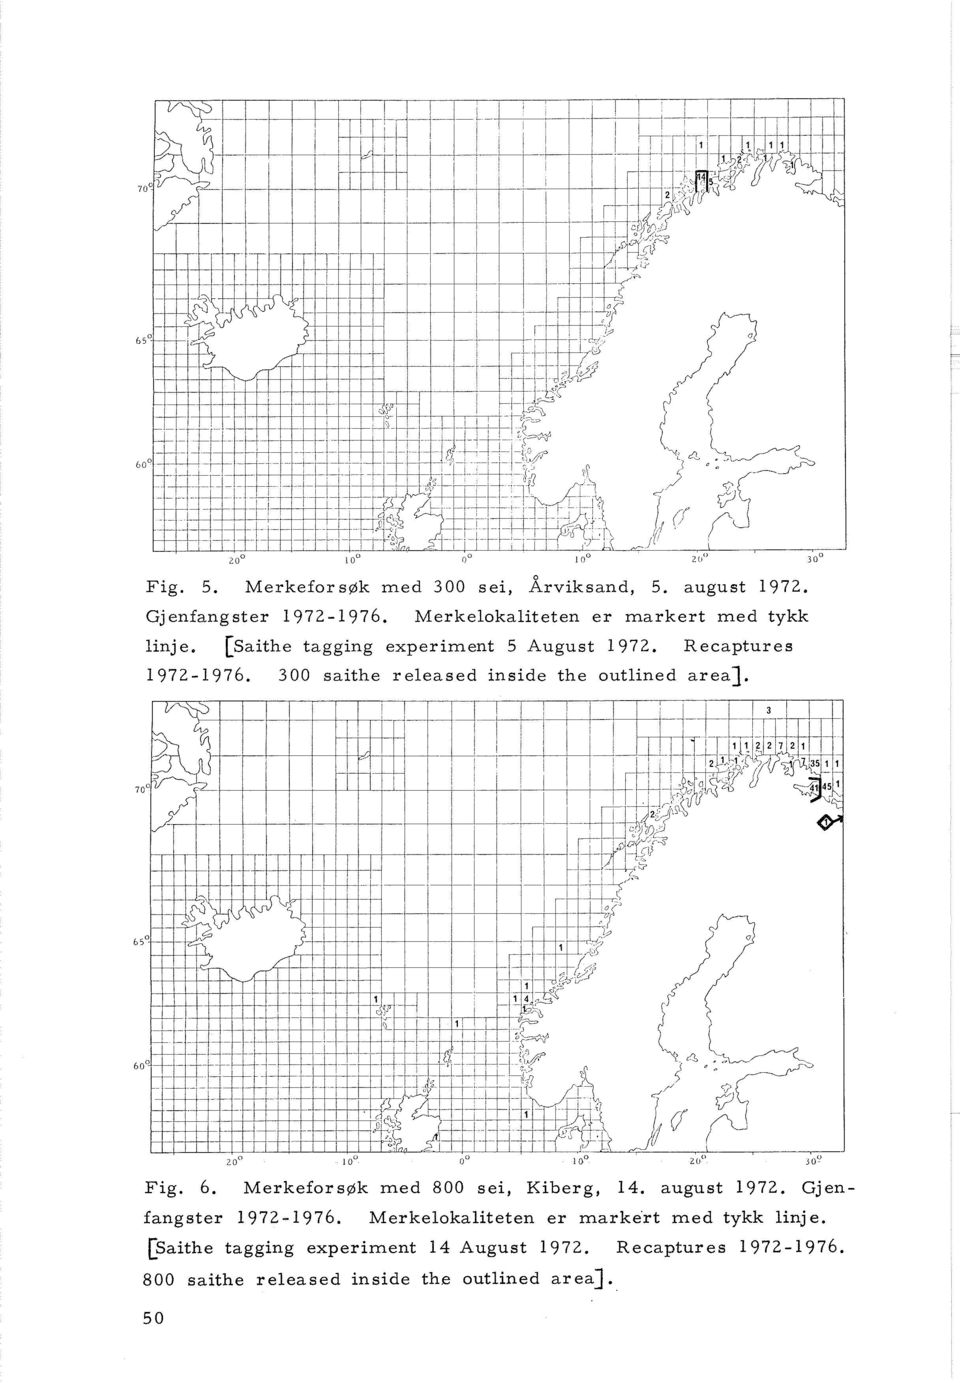 300 saithe r eleased inside the outlined area]. Fig. 6. Merkefors~k med 800 sei, Kiberg, 14. august 1972.